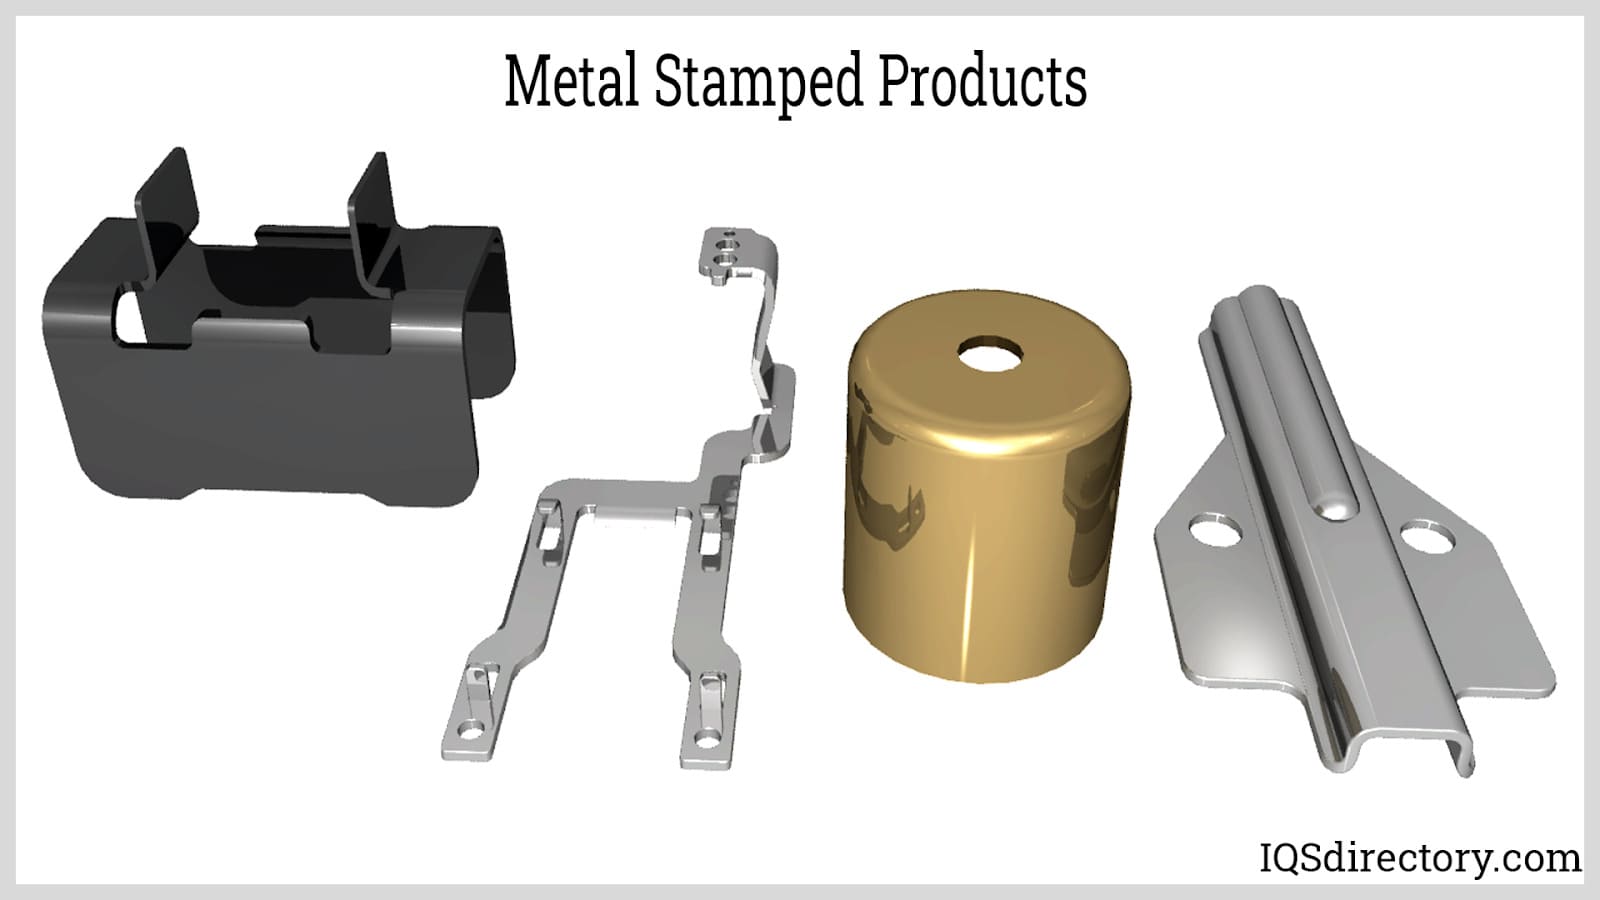 Metal Stampings